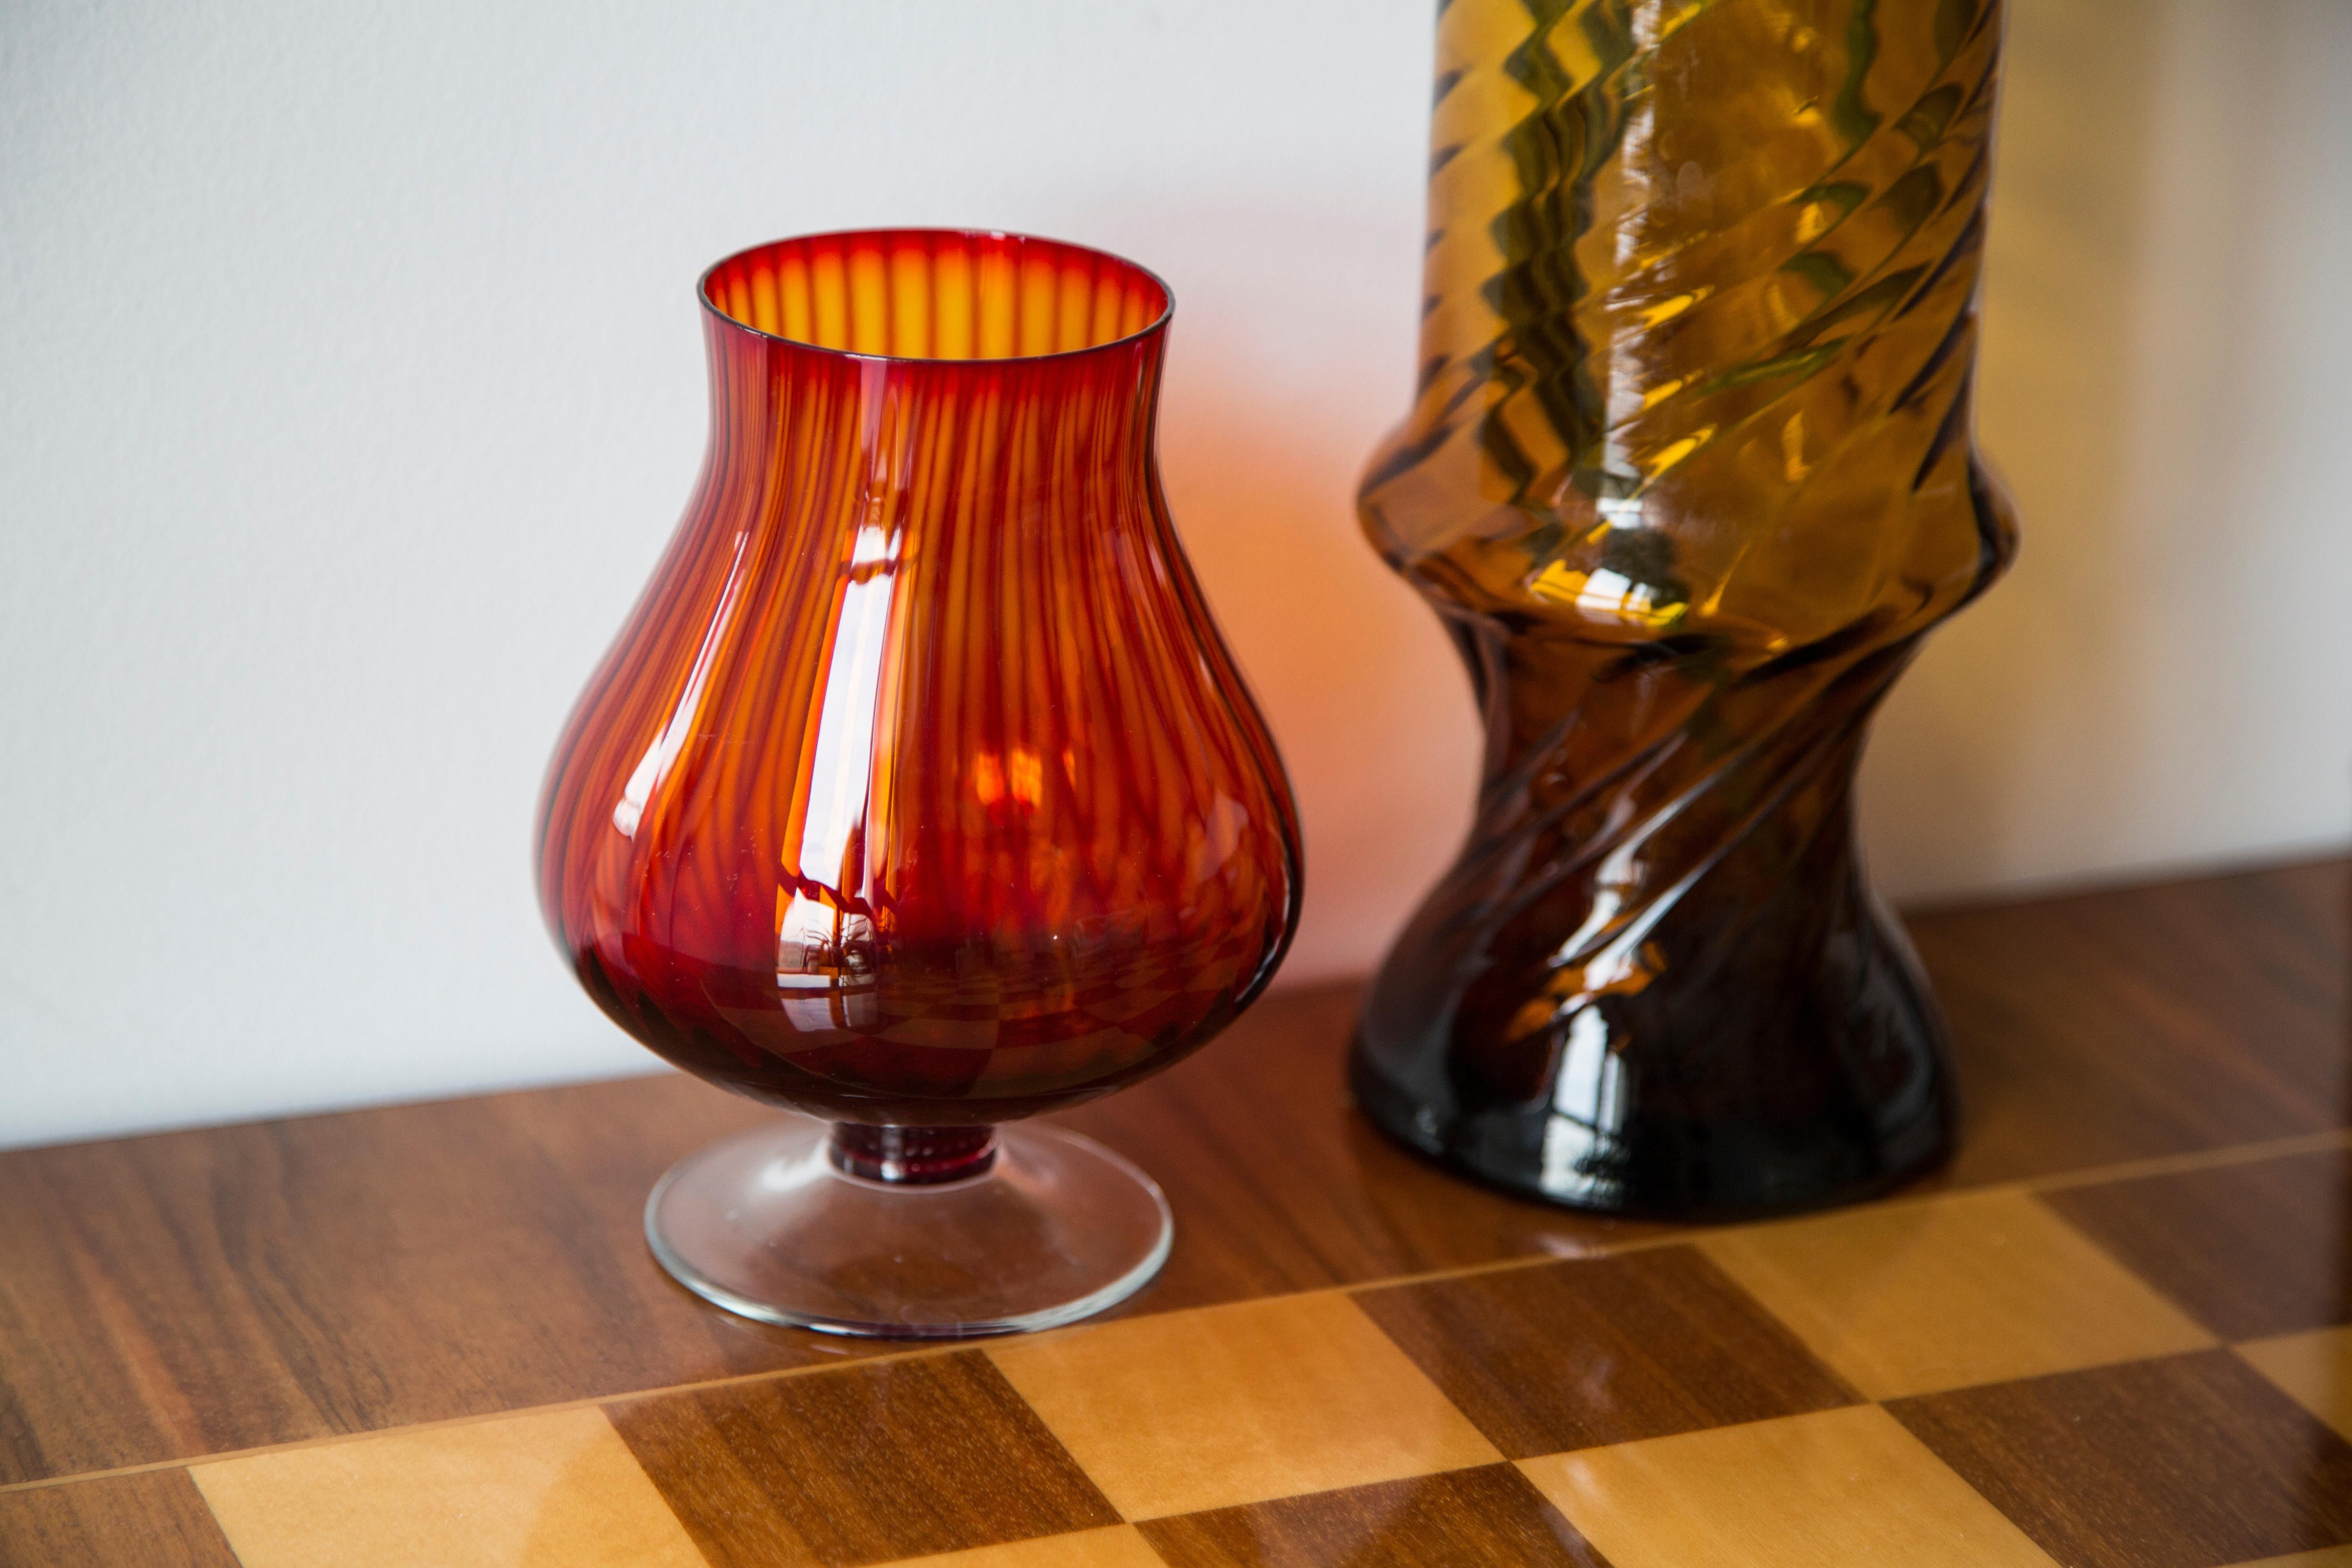 Vase, hergestellt in der Glashütte Tarnowiec in Polen, 
entworfen von J. Słuczan-Orkusz. 
Soda-Glas, massegefärbt, handgeformt. 
Vintage-Produkt aus den 1970er Jahren

Abmessungen: Höhe 14 cm

Sehr guter Zustand, kleine Kratzer auf der Unterseite,